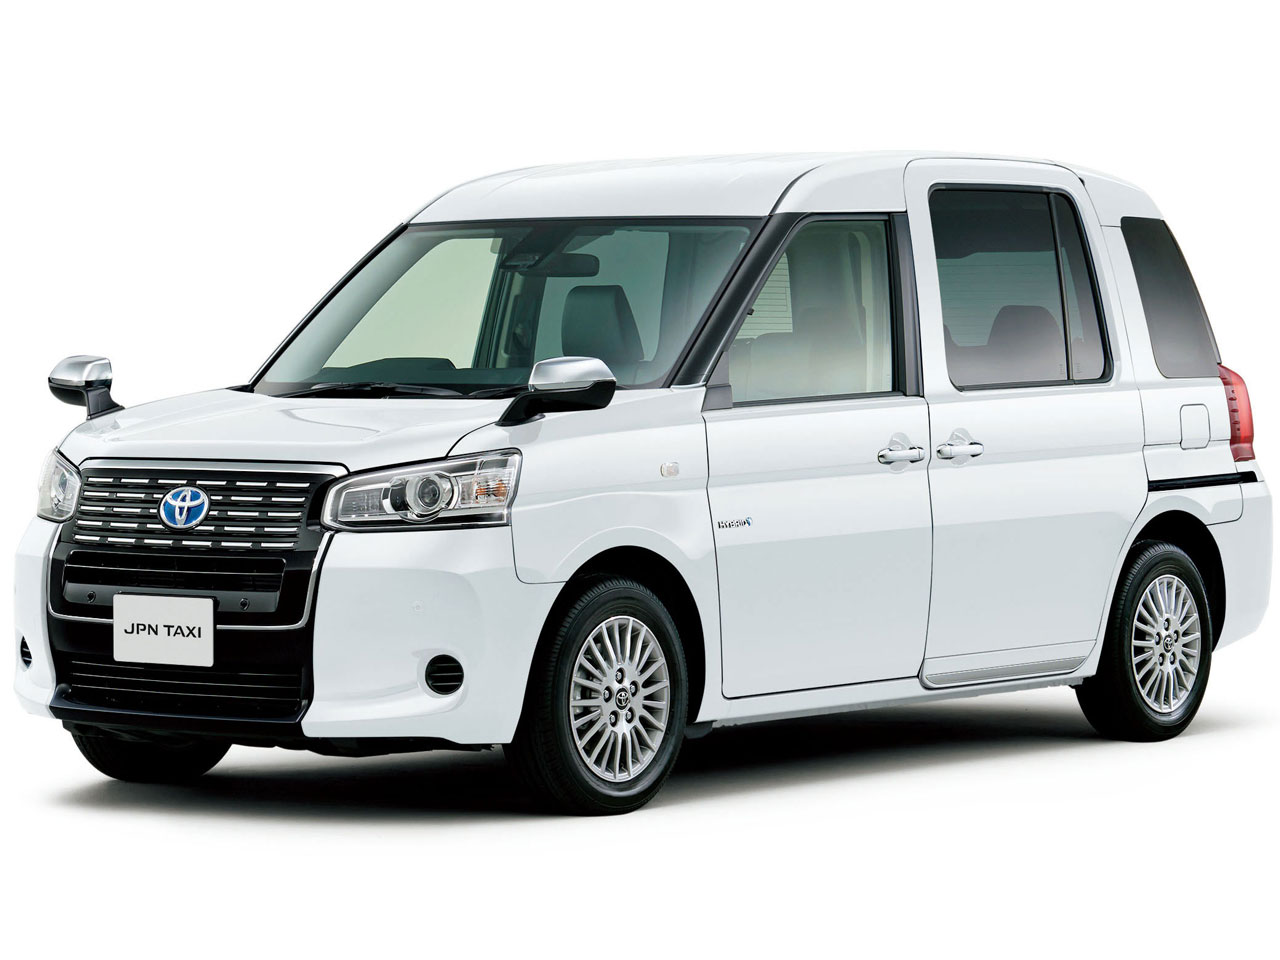 トヨタ ジャパンタクシー 商用車 17年モデル 和 価格 性能 装備 オプション 17年10月23日発売 価格 Com